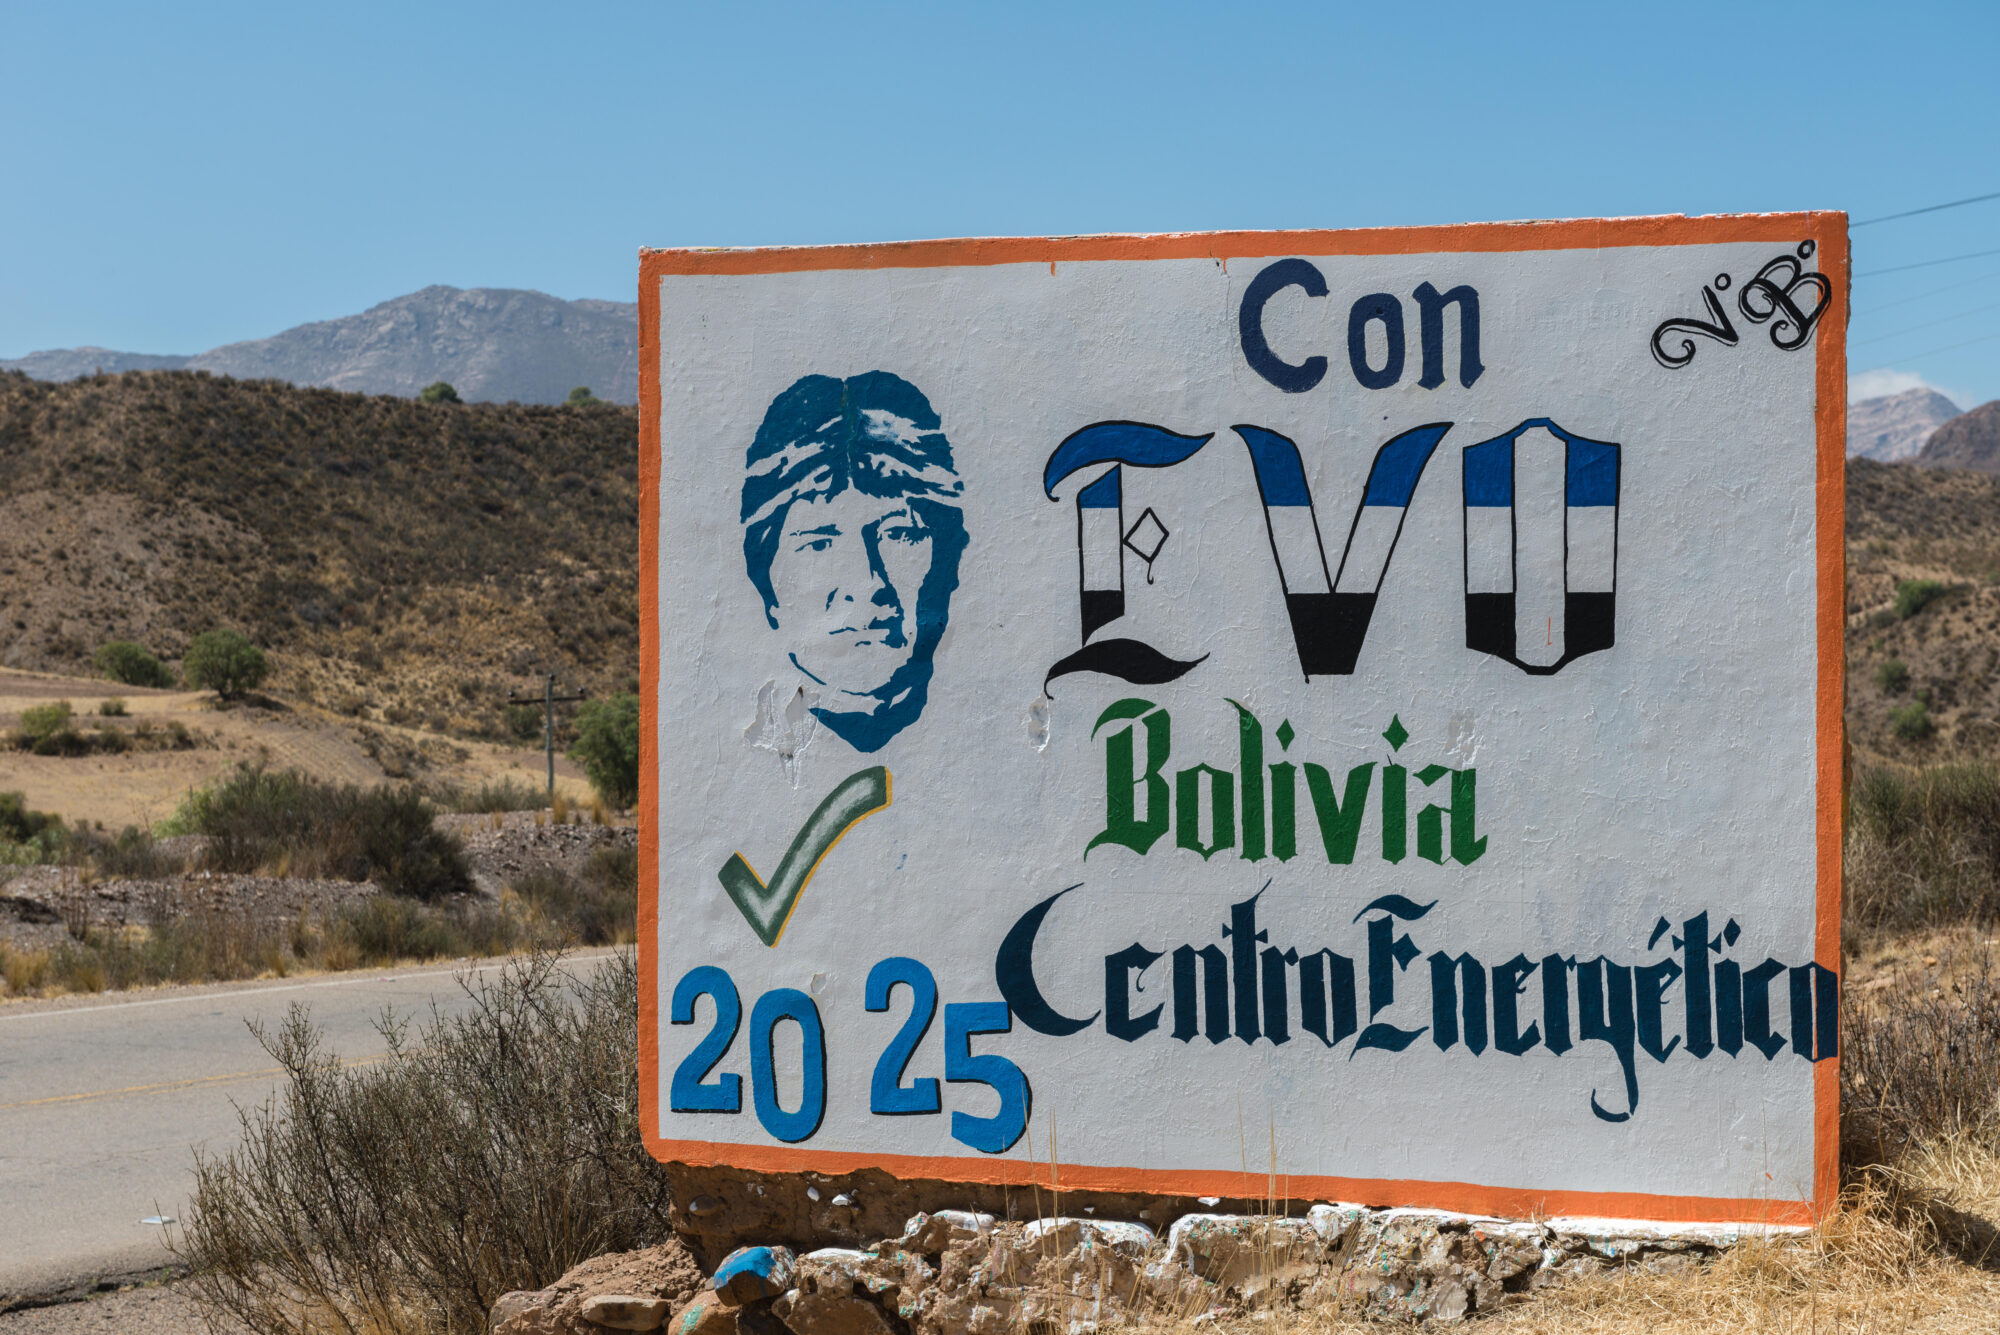 <p>En 2014 el entonces presidente de Bolivia, Evo Morales, lanzó planes nacionales que buscaban promover las energías renovables y convertir al país andino en exportador de energía eléctrica. Sin embargo, hoy en día la producción de energía en Bolivia continúa basándose en gran medida en el gas natural (Imagen: Wolfgang Diederich / Alamy)</p>